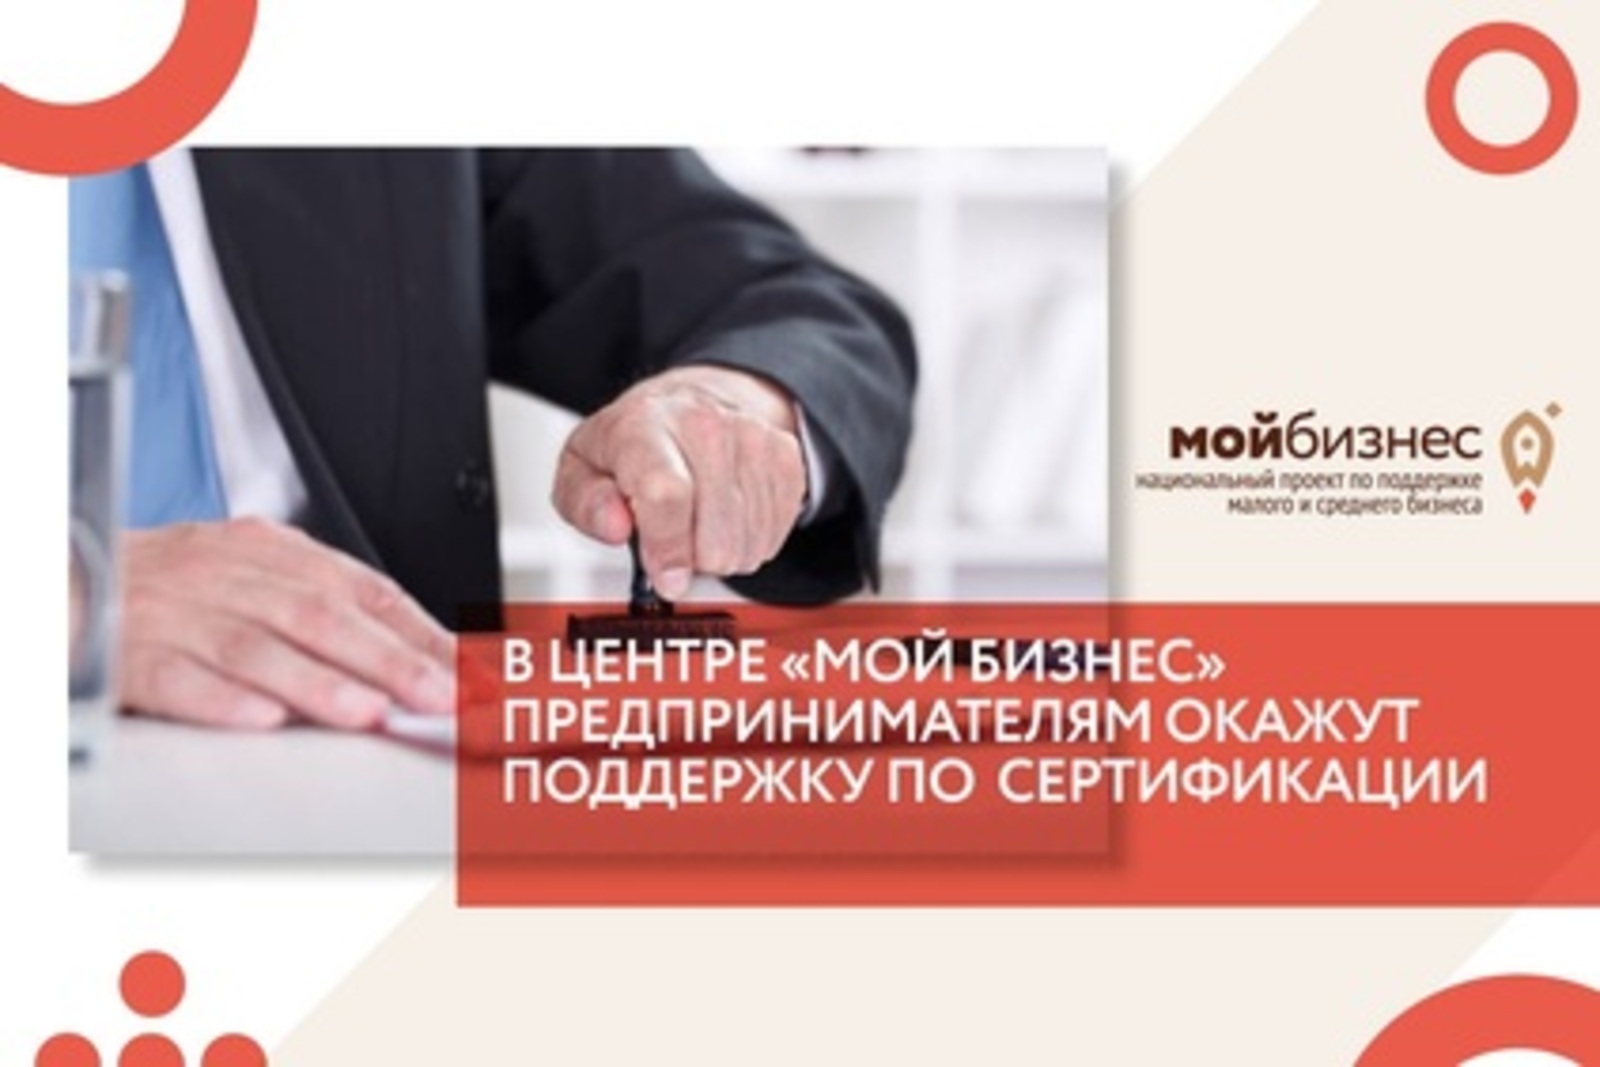 В Башкортостане стало возможным бесплатно получить услуги по стандартизации, сертификации, разрешениям, патентованию